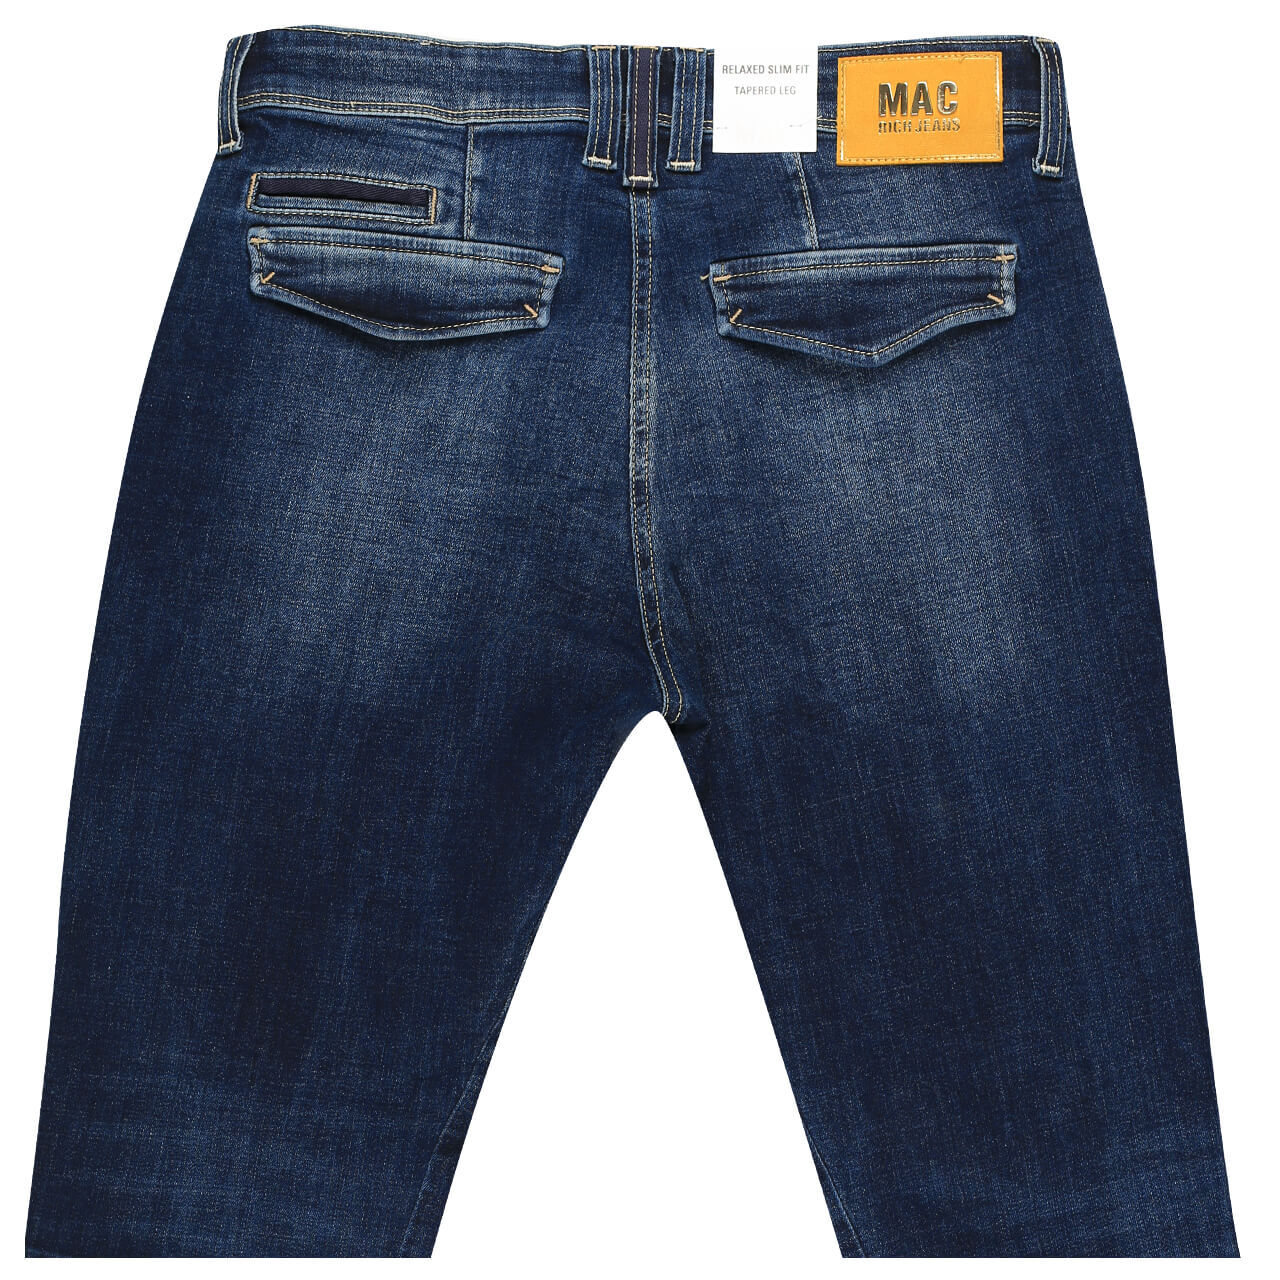 MAC Jeans Rich Cargo Ankle für Damen in Dunkelblau verwaschen, FarbNr.: D671